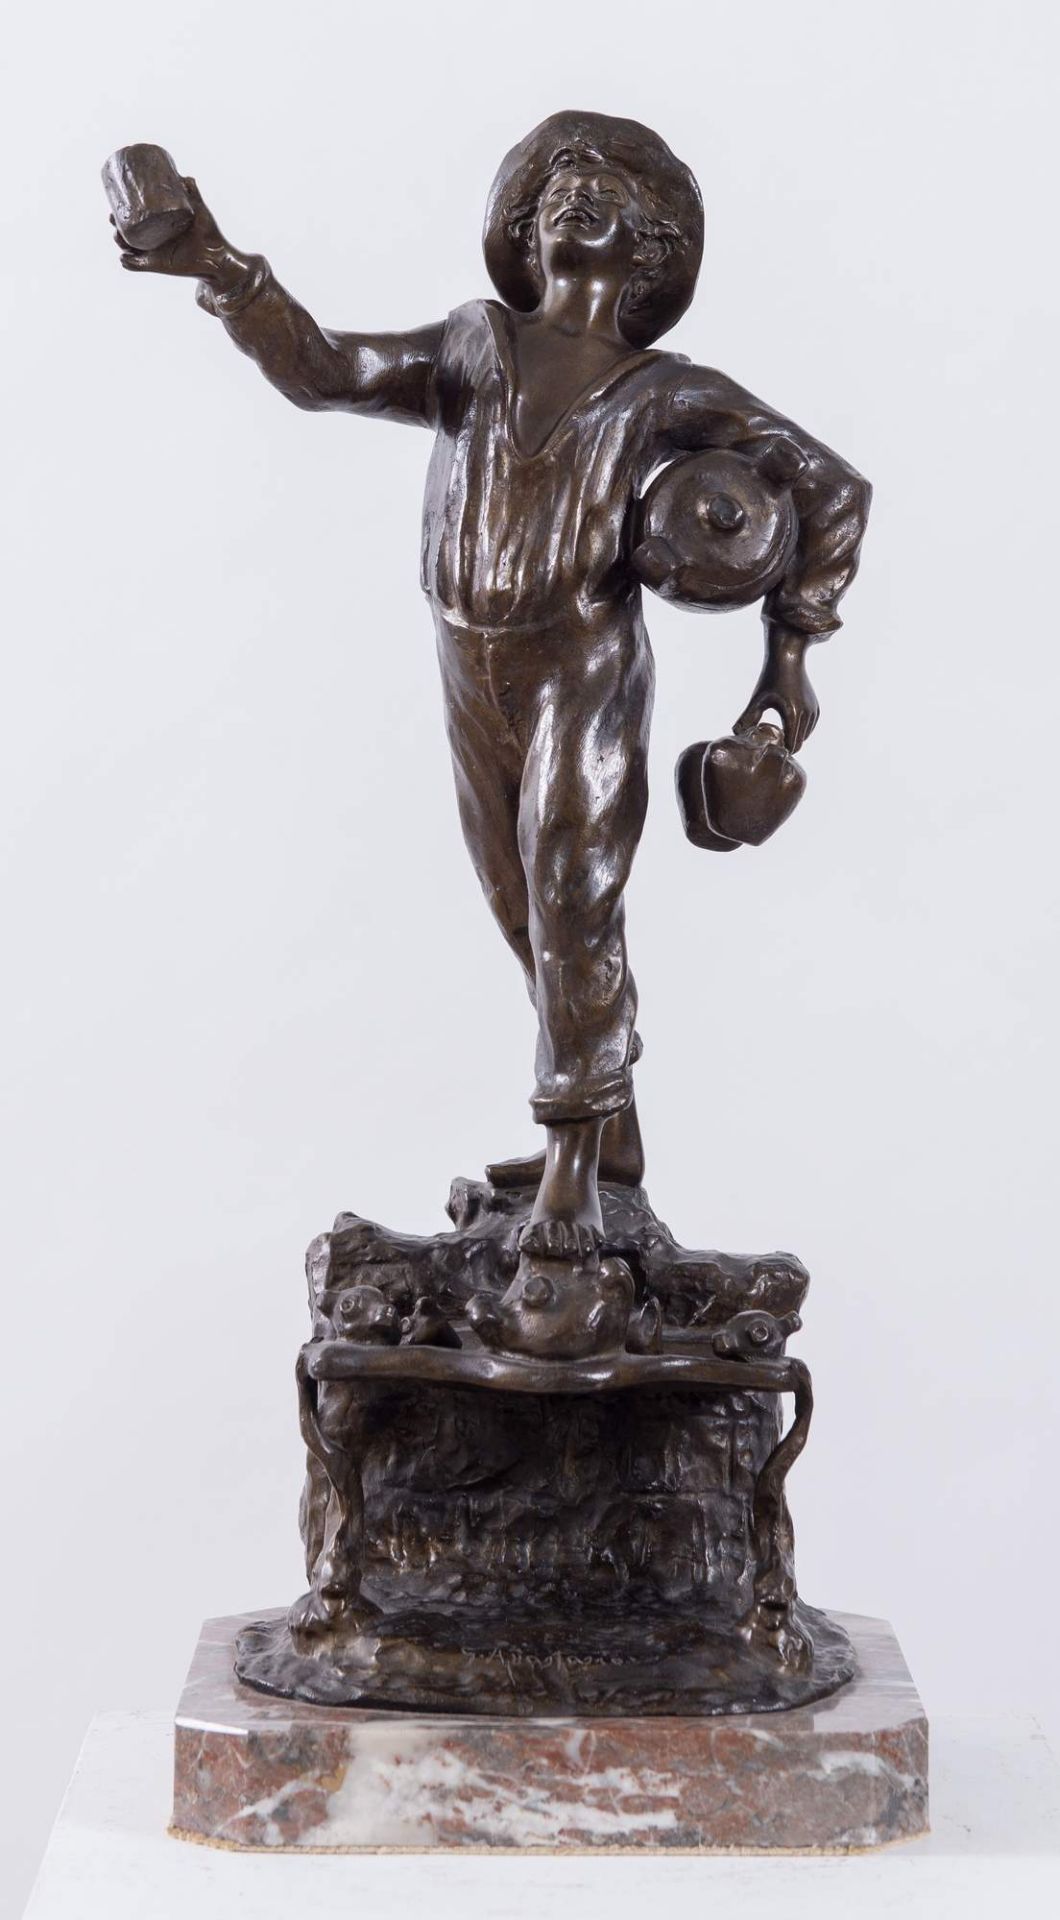 GENNARO ANASTASIO, metà del XX secolo. "Acquaiolo", scultura in bronzo. Cm (senza basamento) 47,